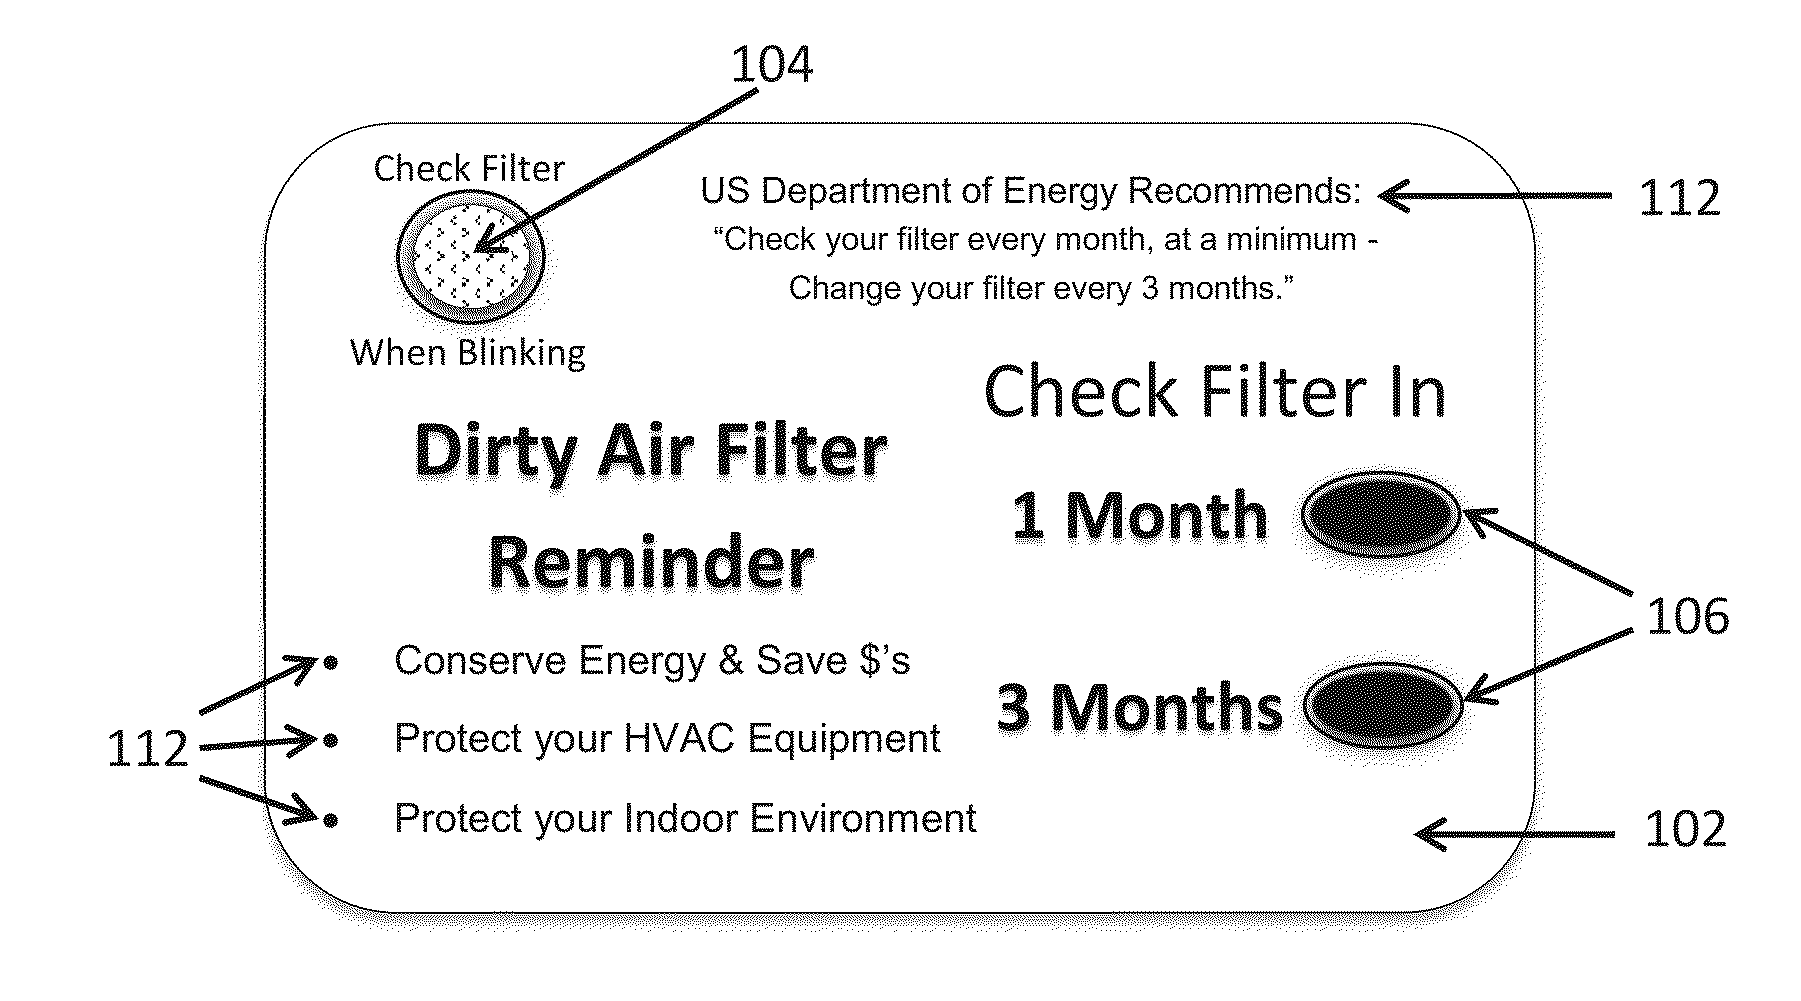 HVAC air filter check reminder refrigerator magnet